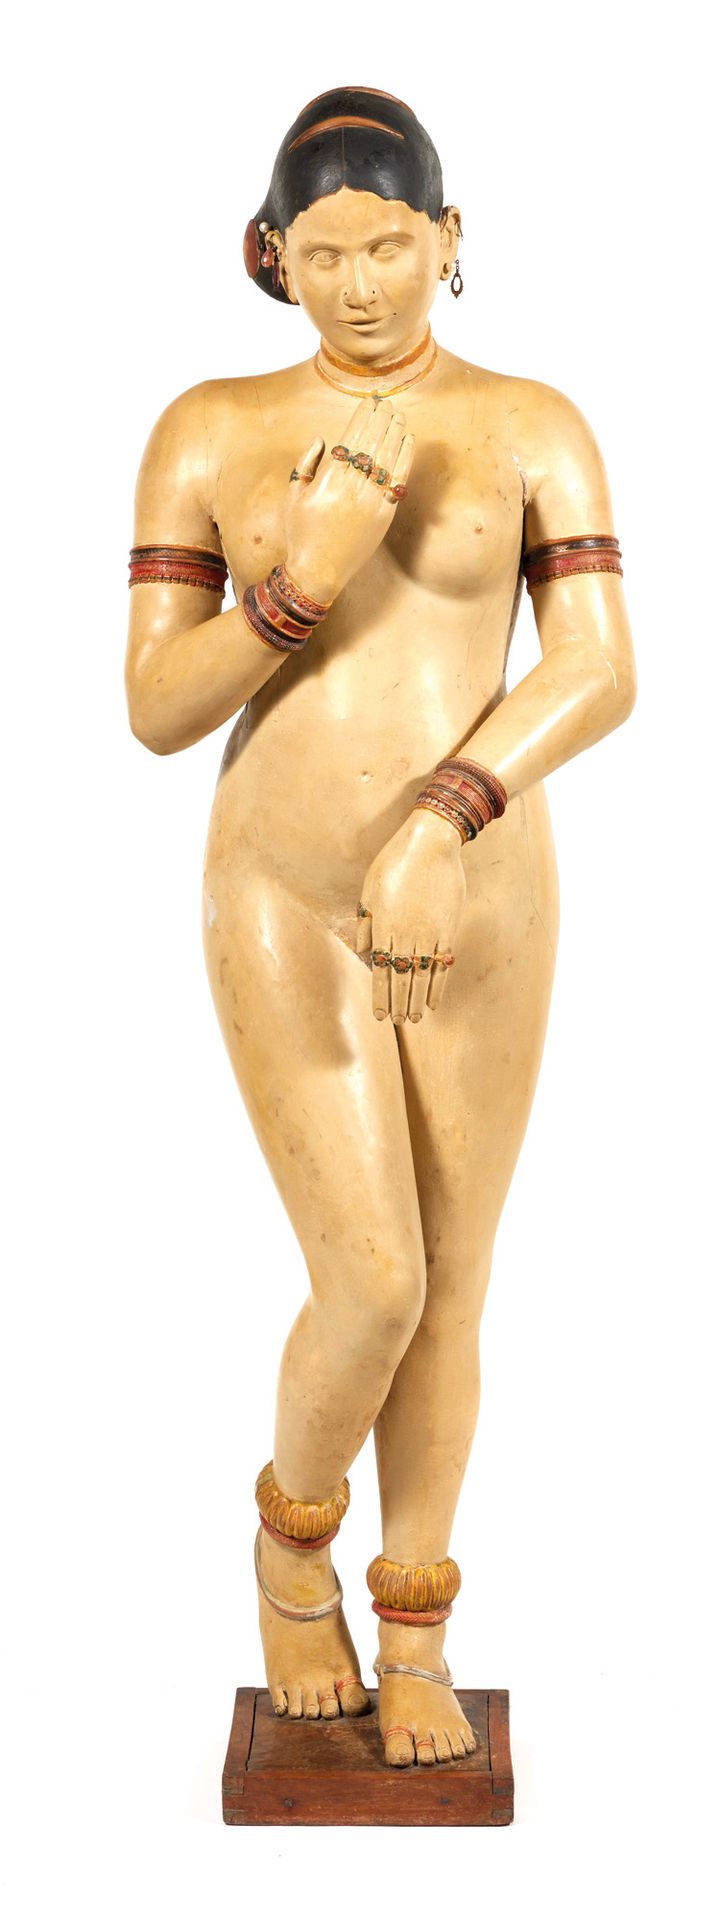 Vénus pudique Pudique Venus

Sculpture in stuccoed polychrome wood, on a quadran&hellip;